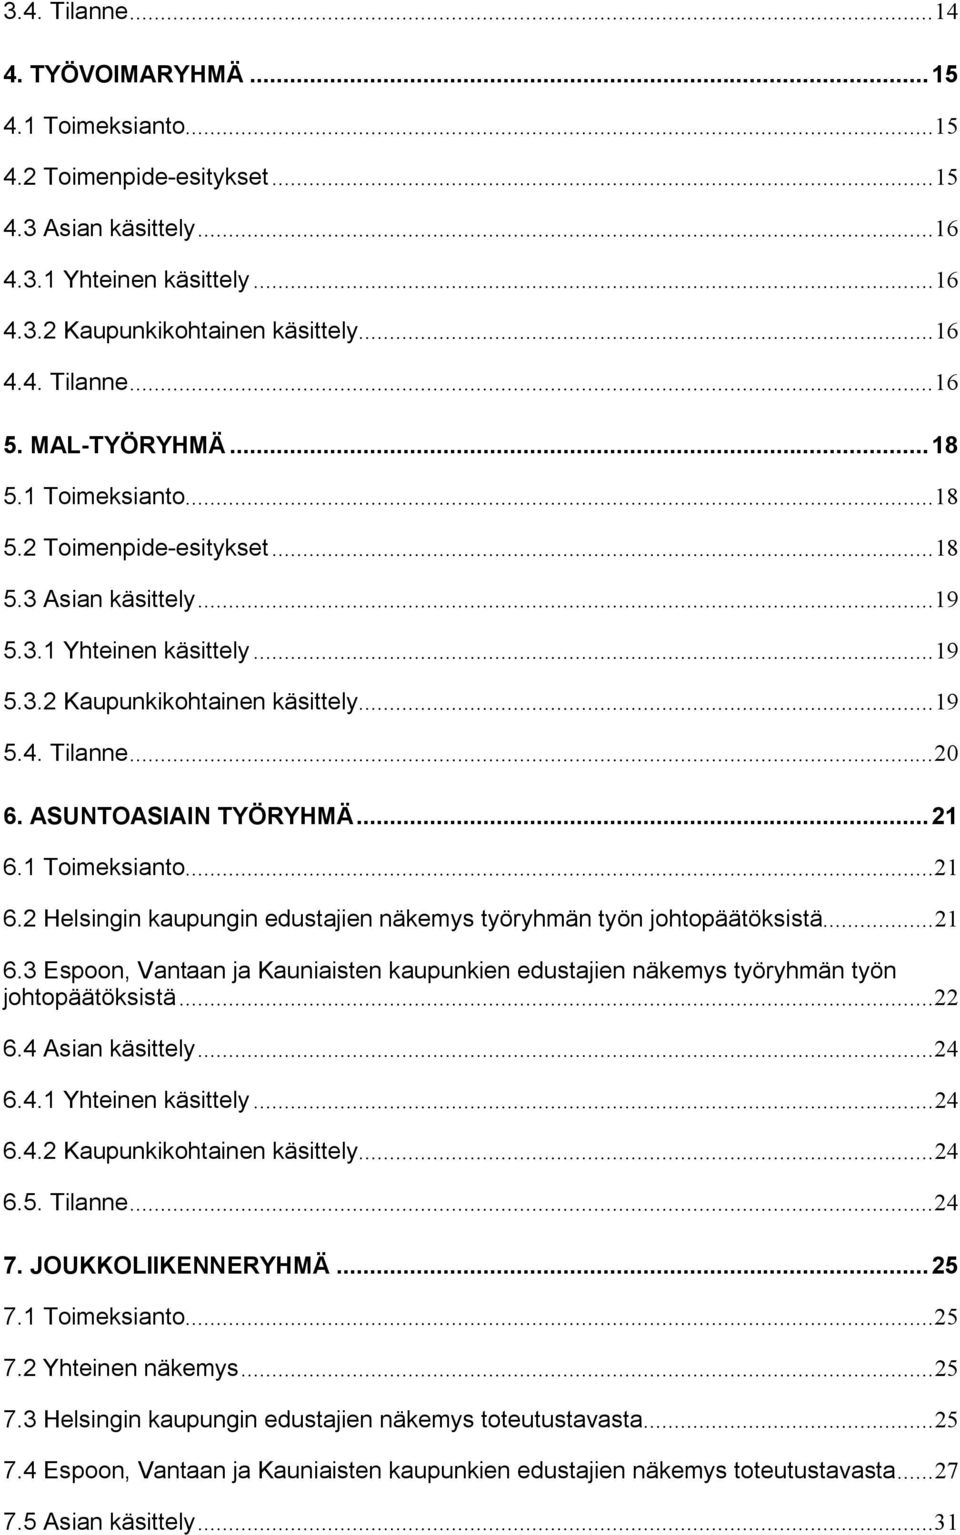 ASUNTOASIAIN TYÖRYHMÄ...21 6.1 Toimeksianto...21 6.2 Helsingin kaupungin edustajien näkemys työryhmän työn johtopäätöksistä...21 6.3 Espoon, Vantaan ja Kauniaisten kaupunkien edustajien näkemys työryhmän työn johtopäätöksistä.